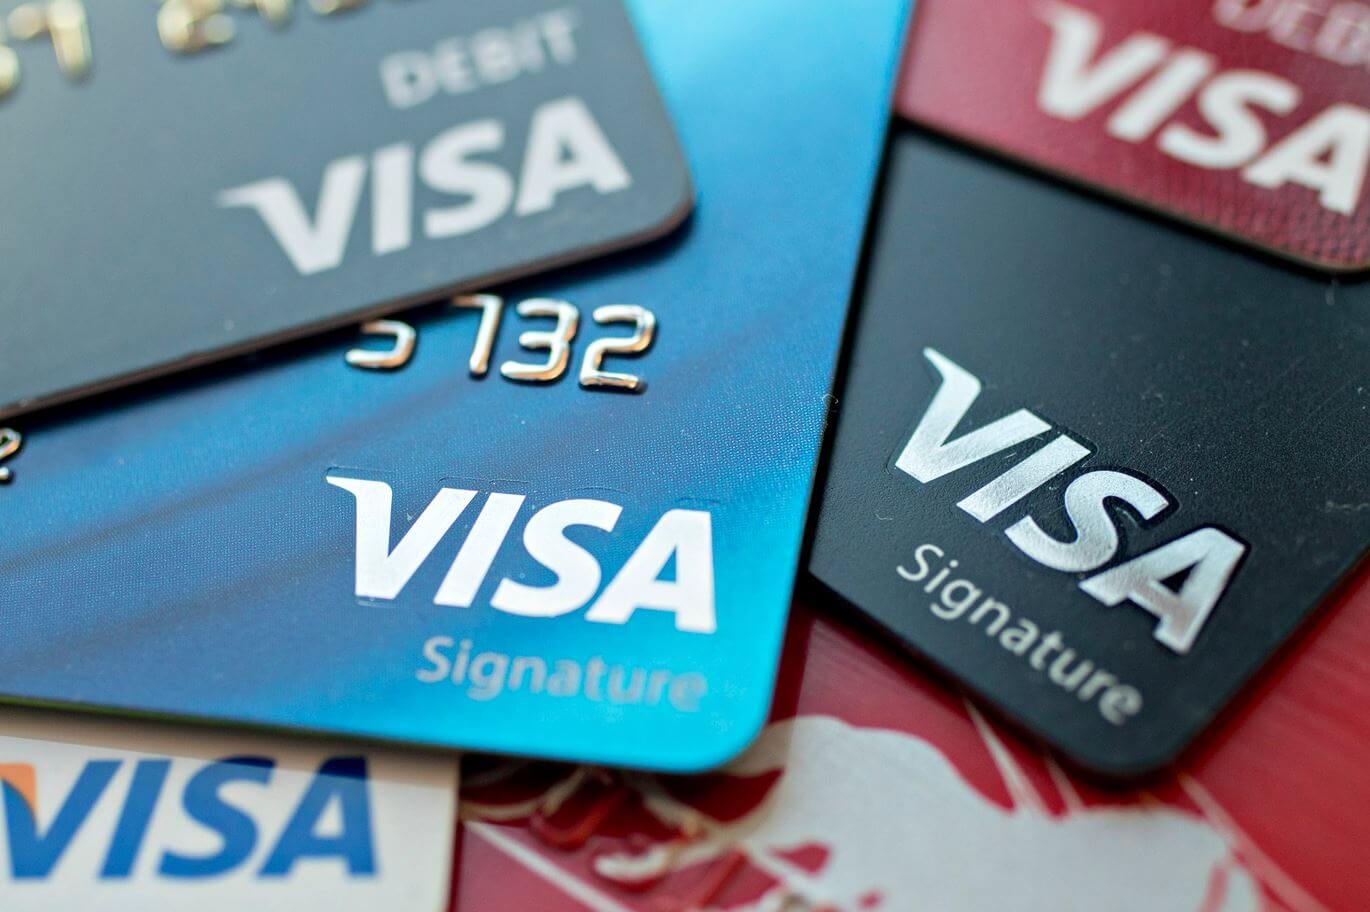 Visa credit card: изображения без лицензионных платежей